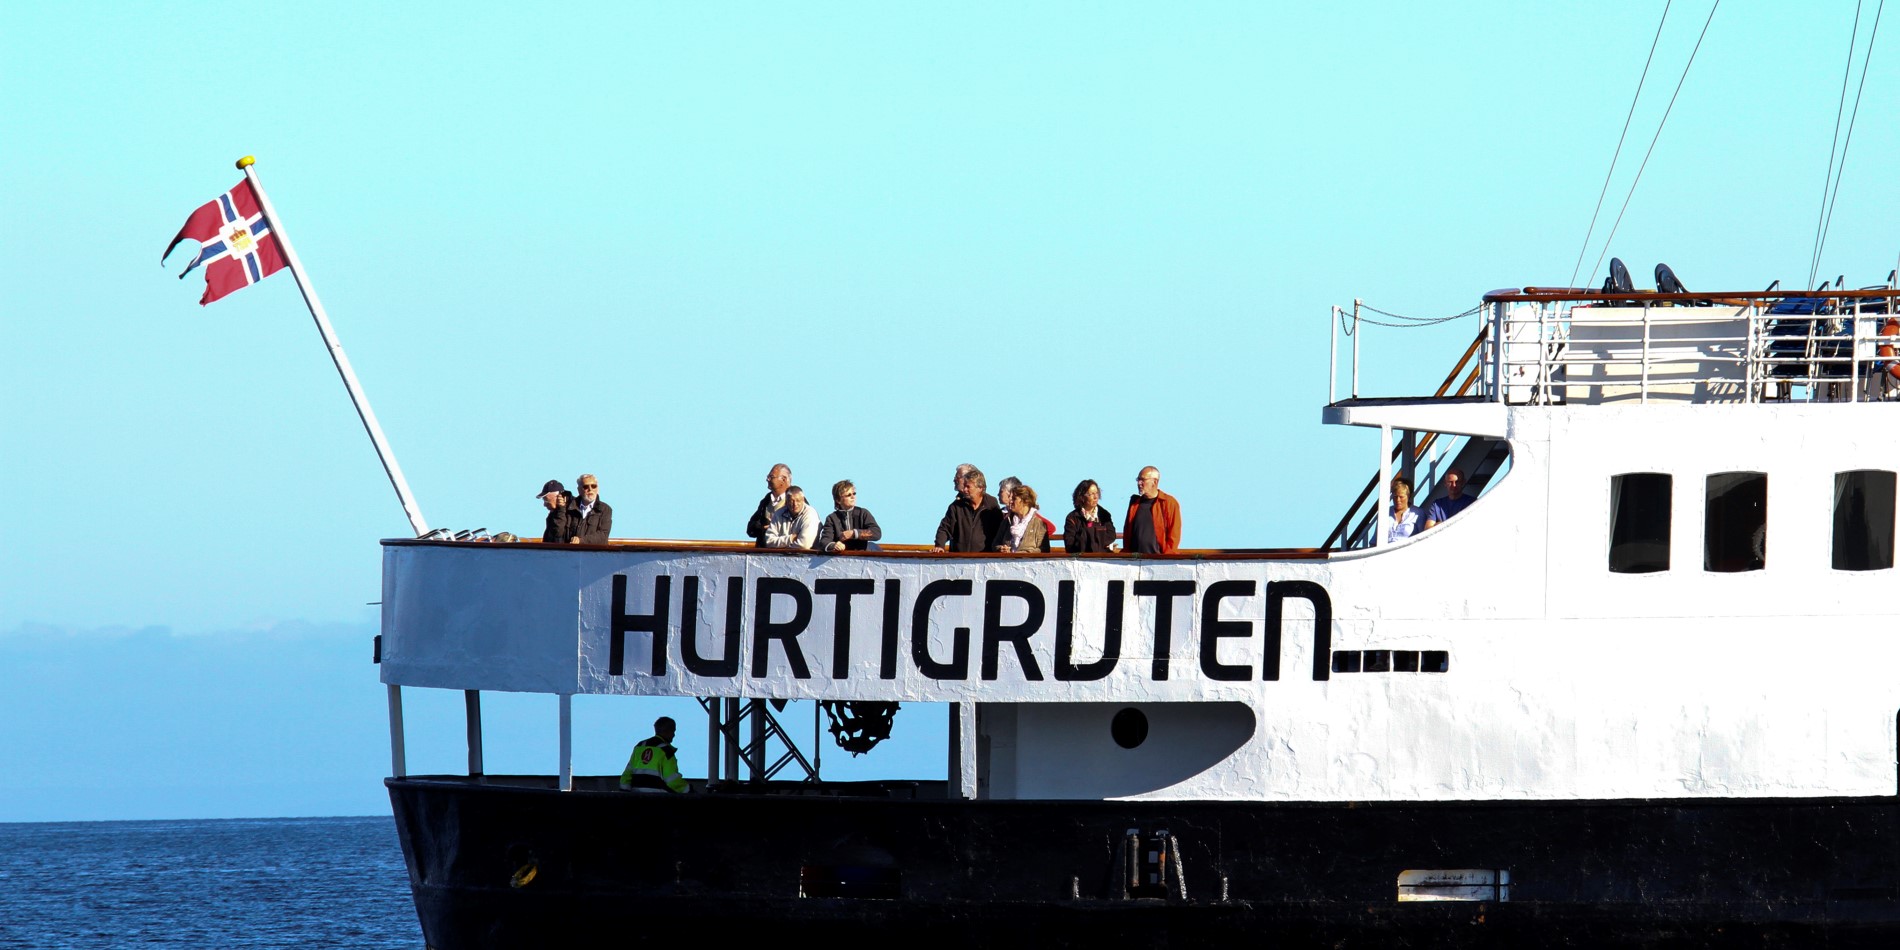 Le MS Nordstjernen, notre navire blanc et noir, navigue avec son pavillon flottant au vent. À la poupe, des passagers admirent la vue